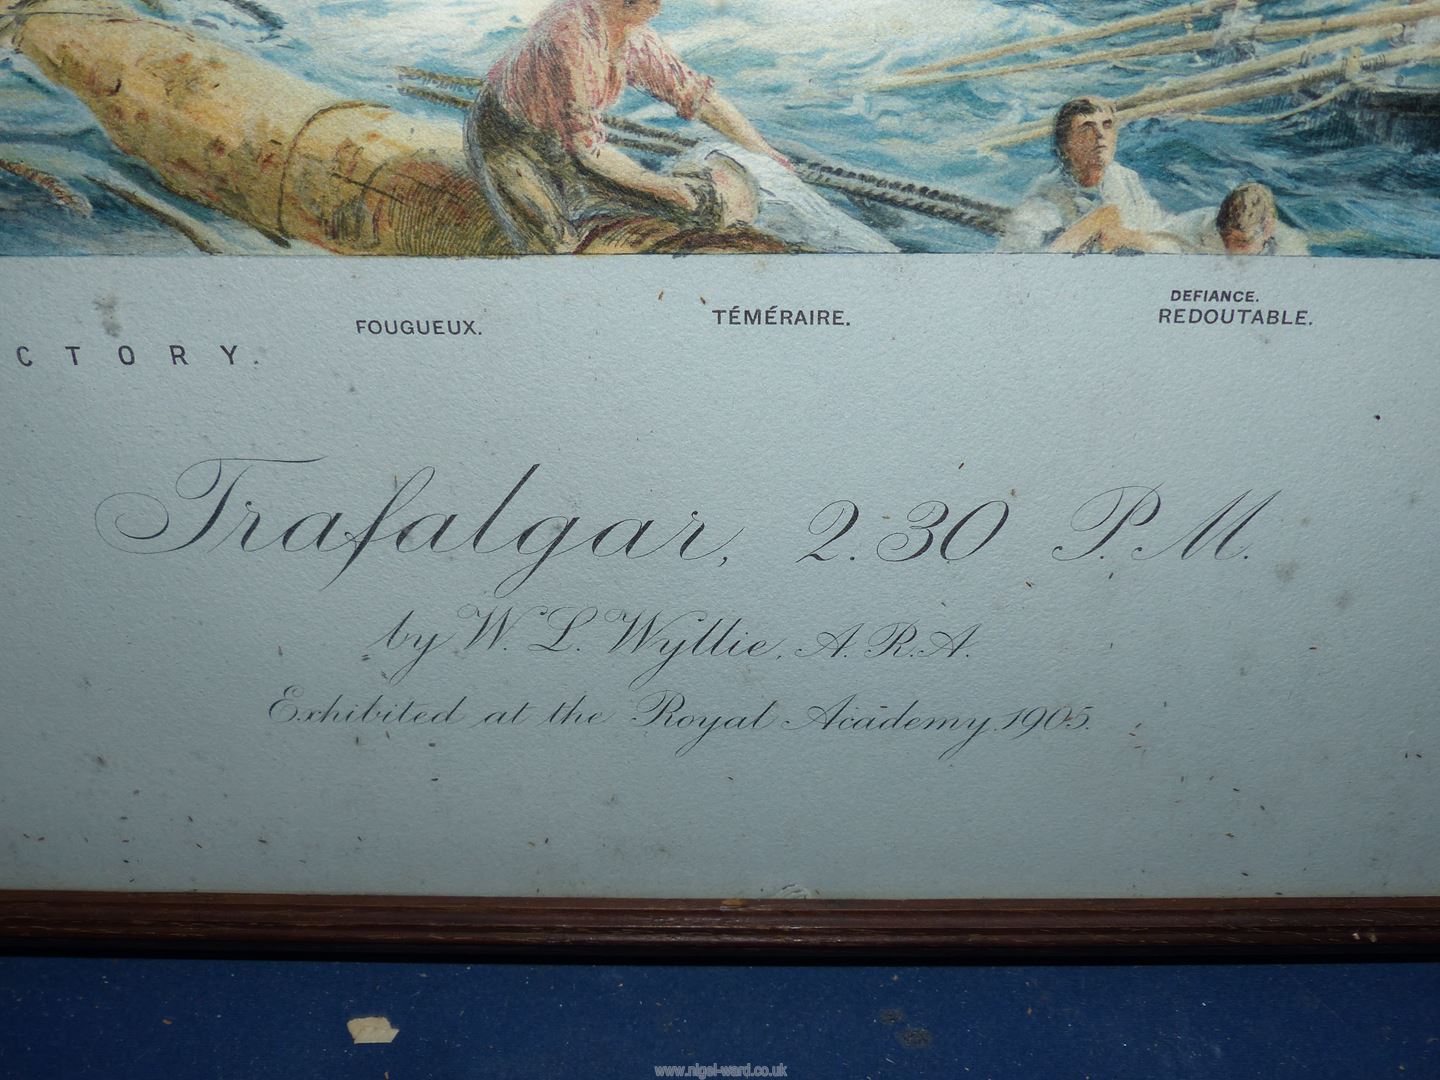 A large framed Print titled "Trafalgar 2.30 pm" by W.L. Wyllie, 40'' x 28 3/4''. - Image 4 of 5